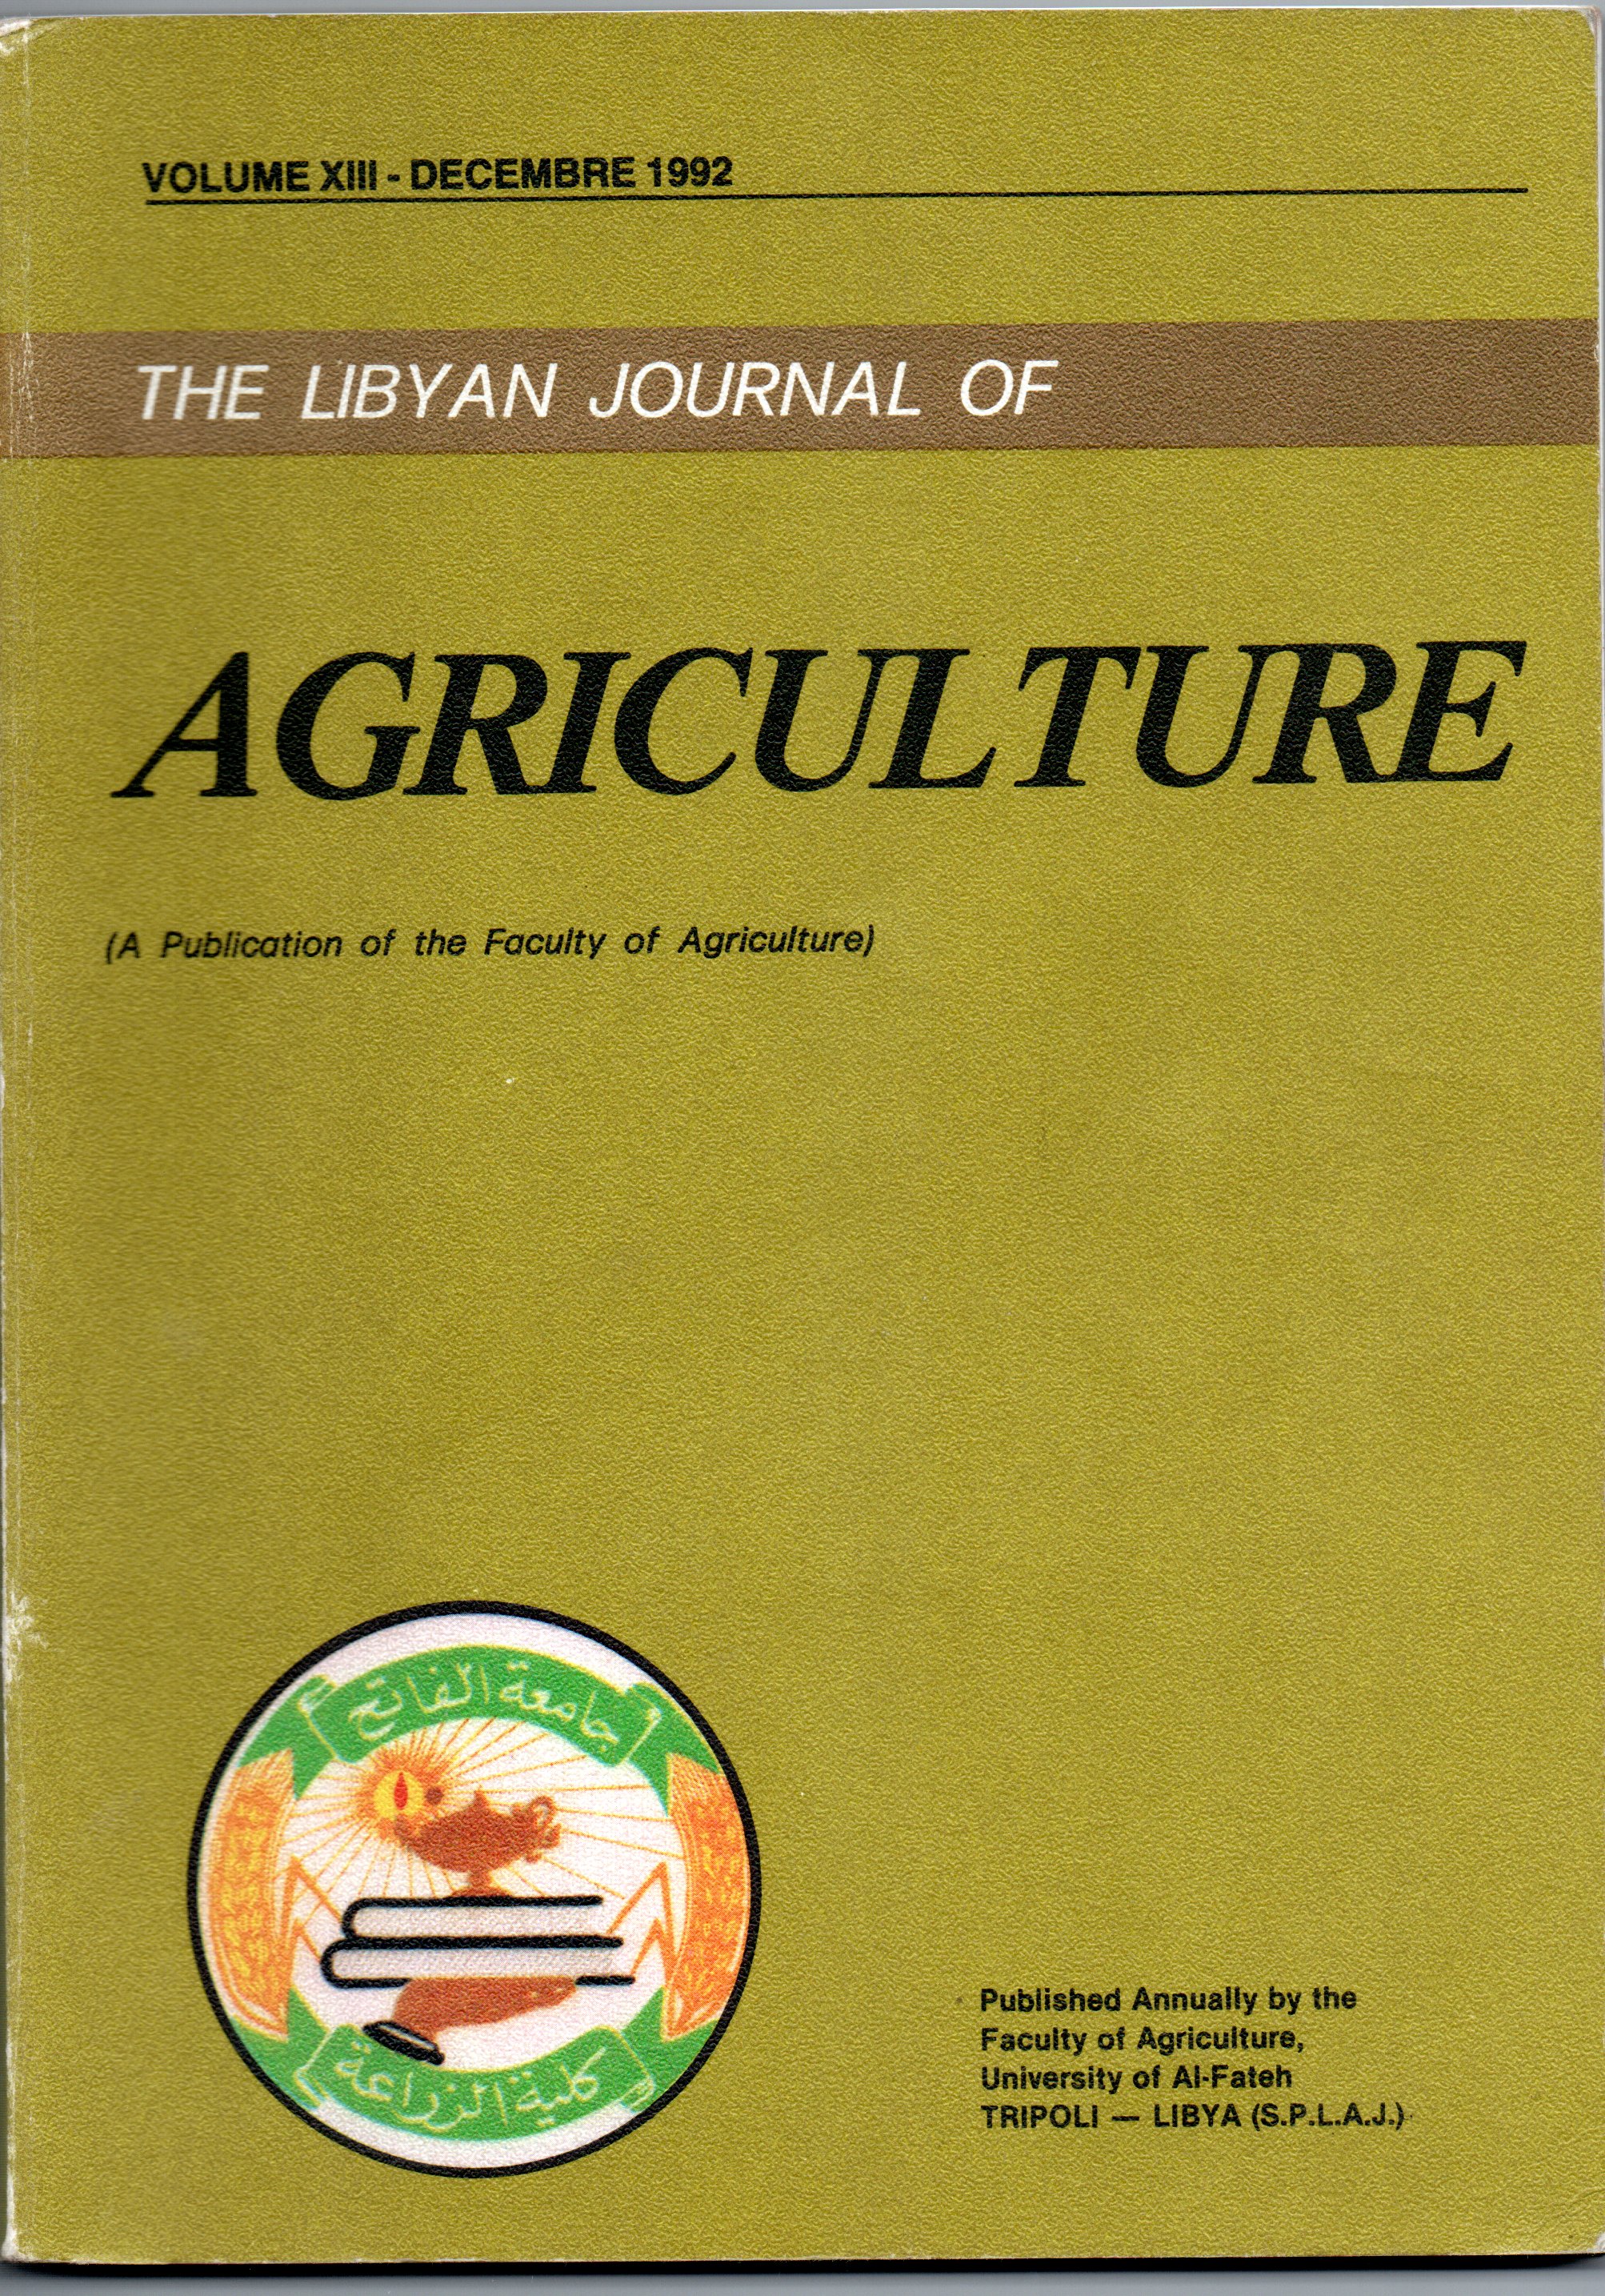 					معاينة مجلد 13 عدد 1 (1992): المجلة الليبية للعلوم الزراعية
				